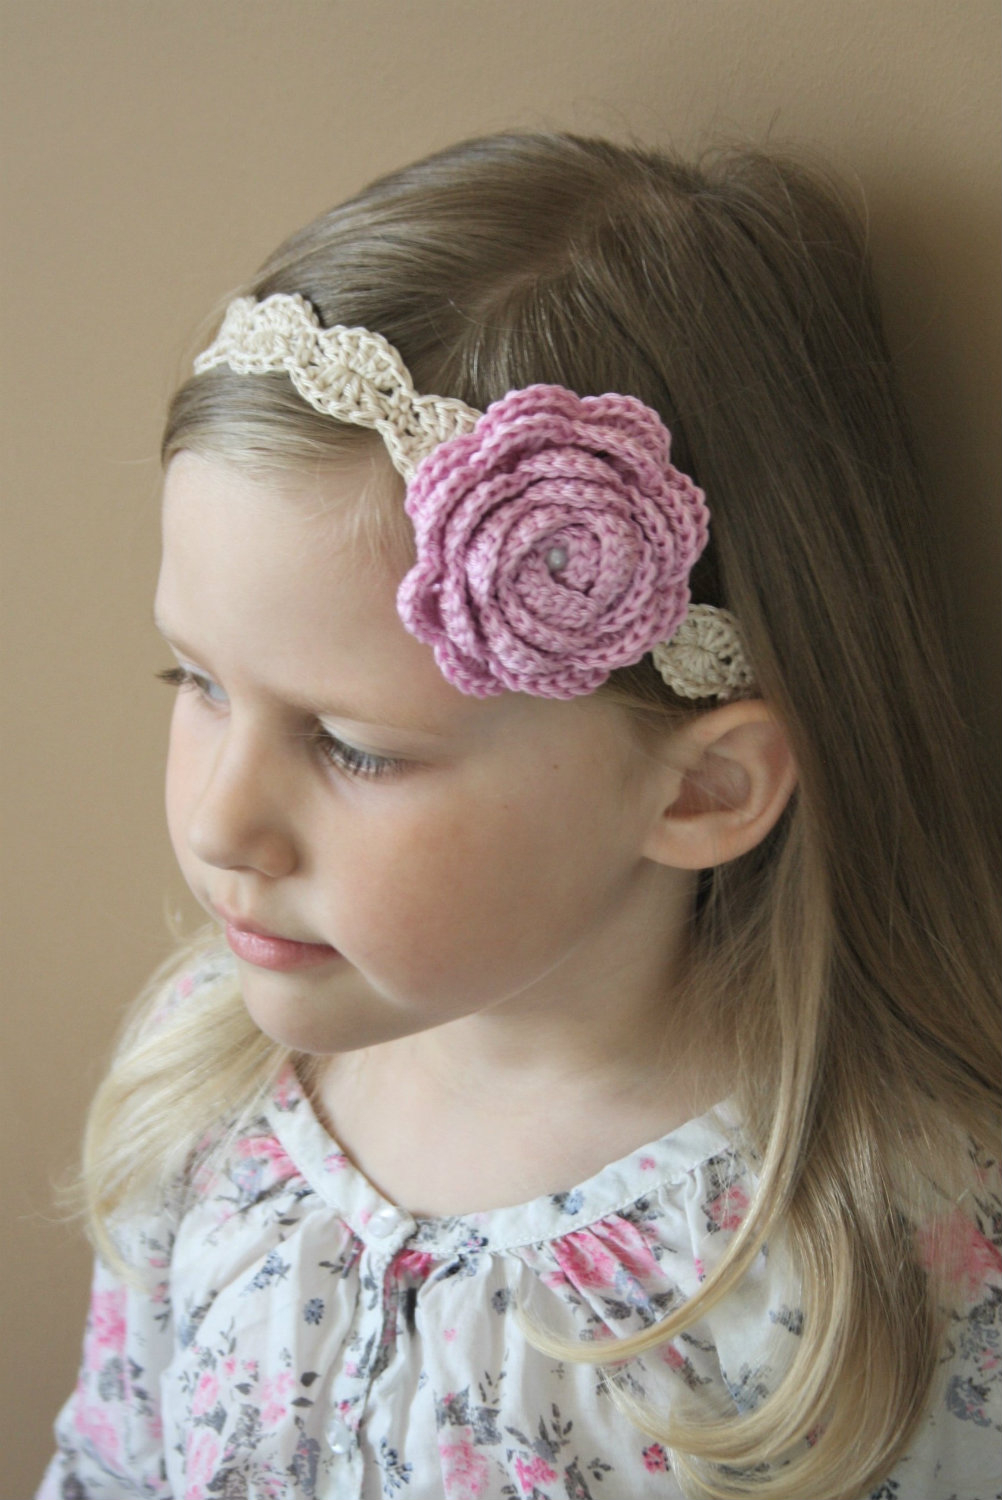 Crochet Headband With Flower Pattern Crochet Headband Maria Downloadable Crochet Pattern Lilleliis